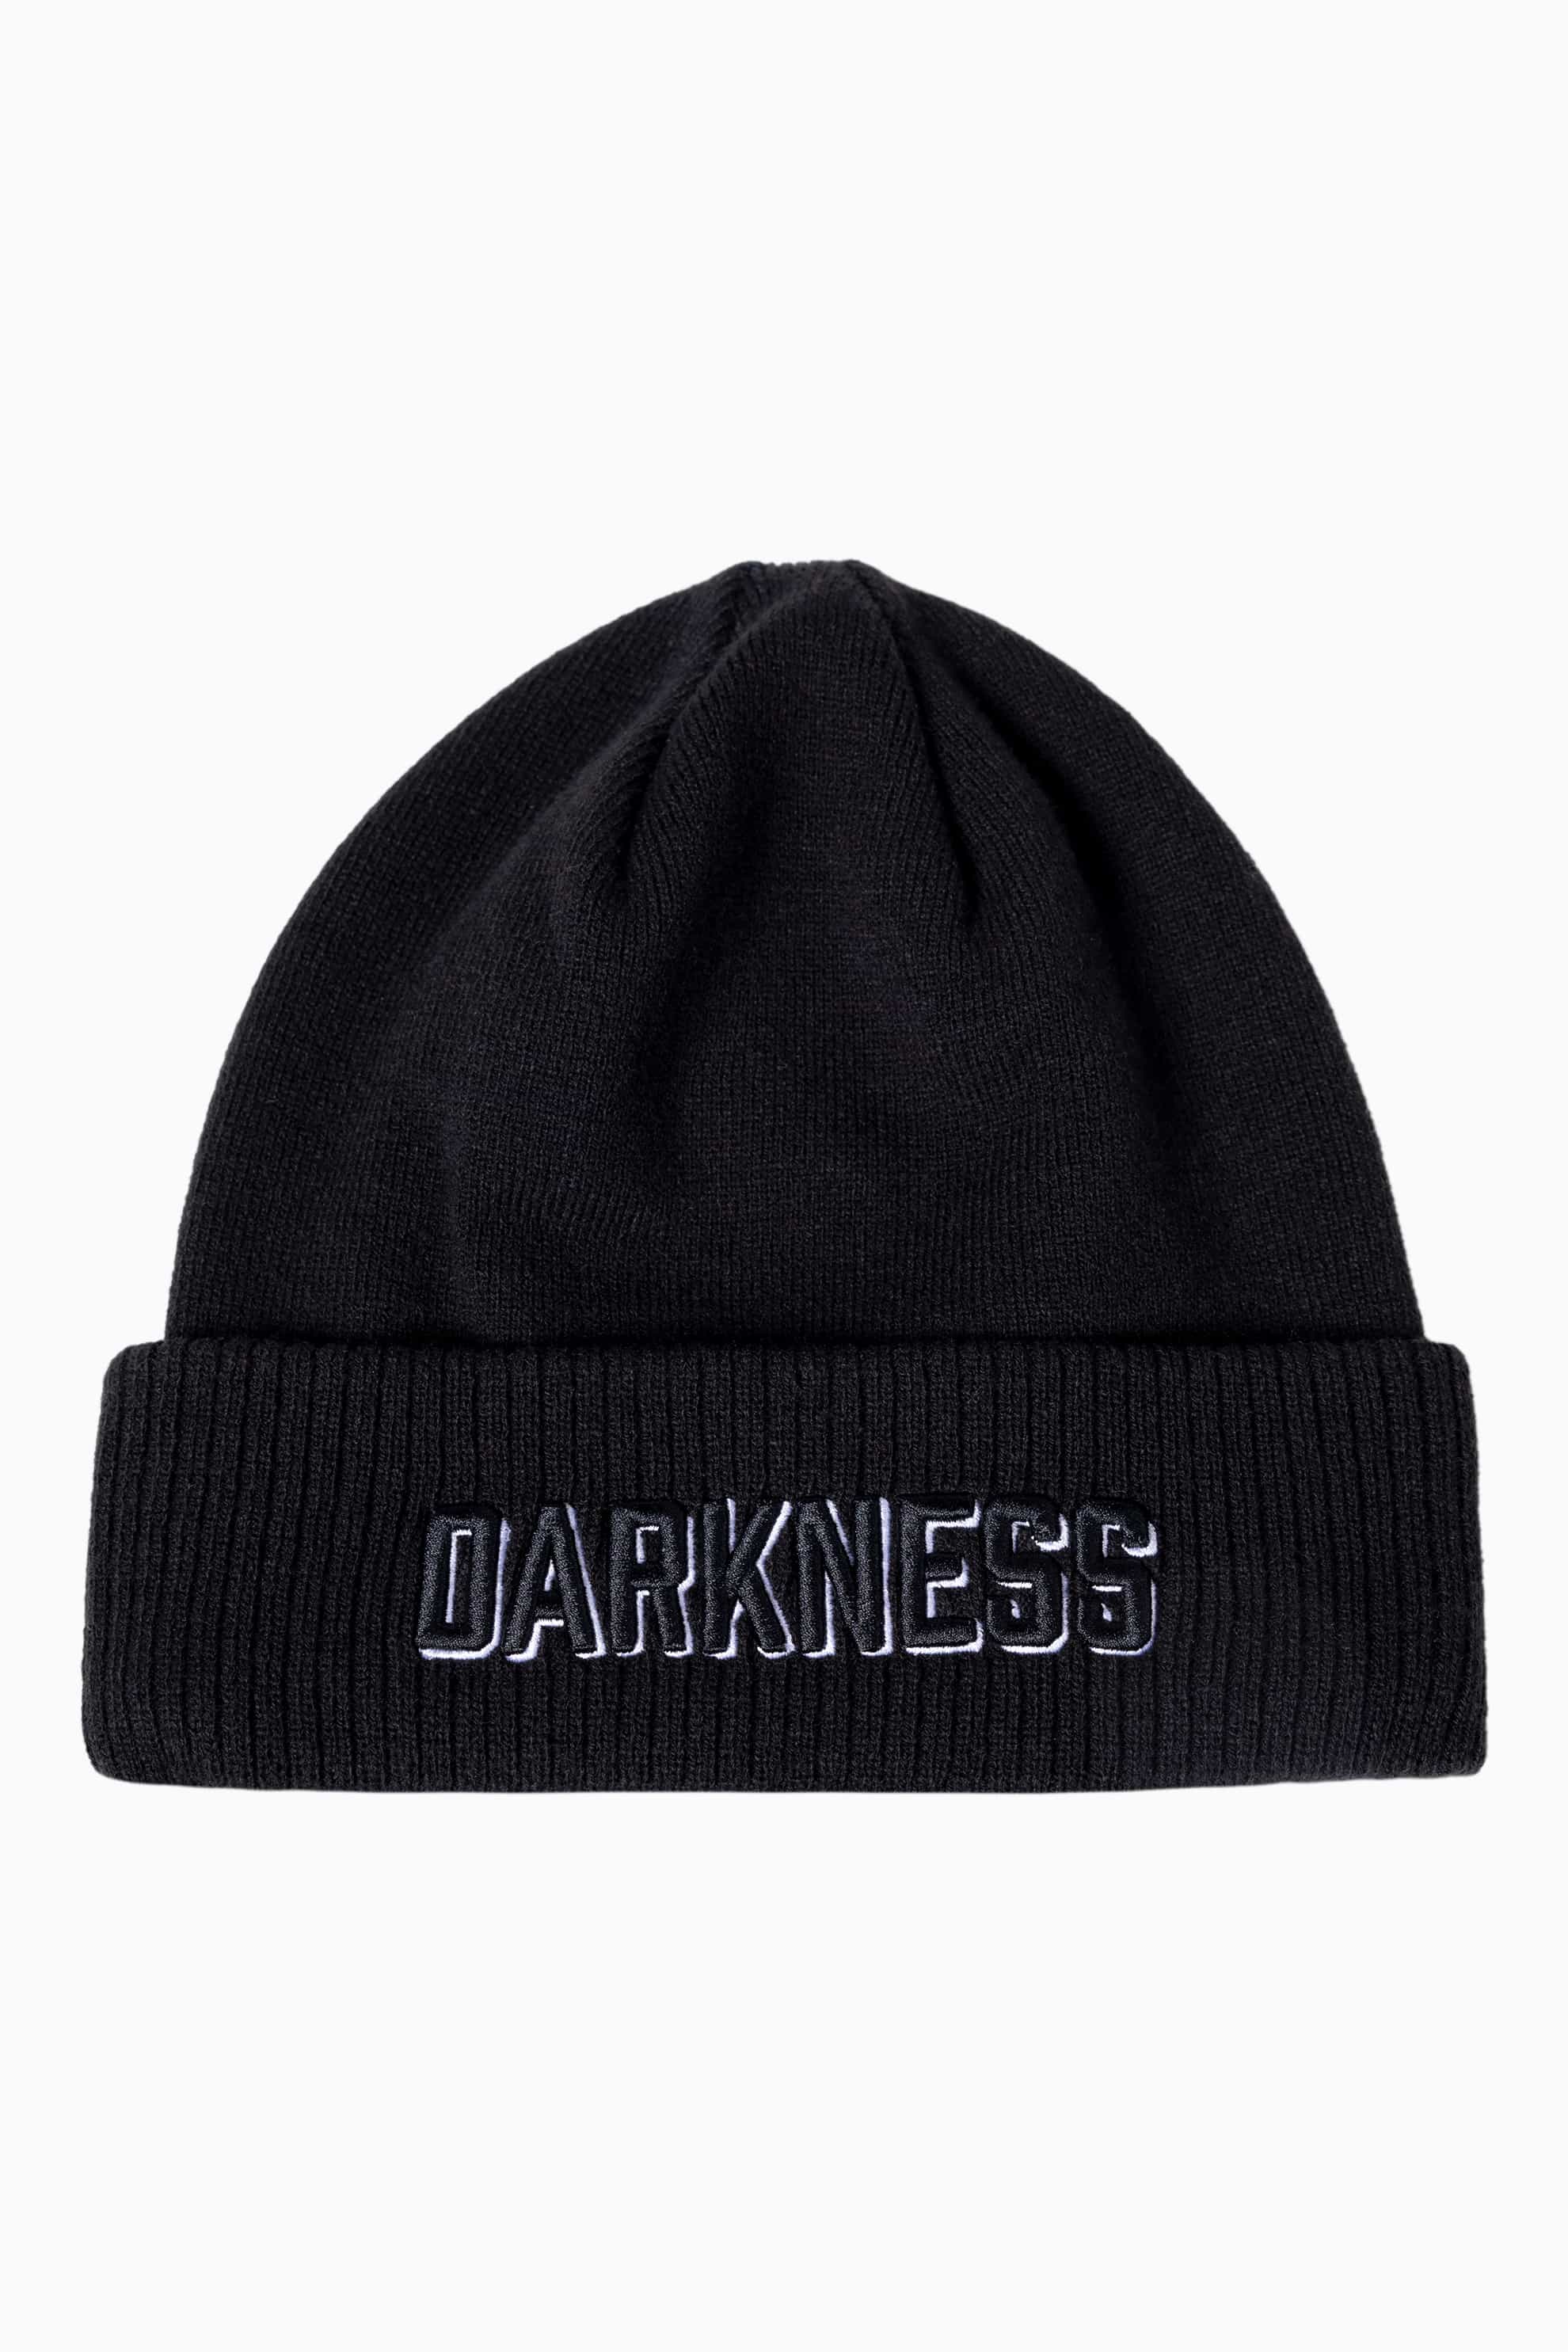 Buy Darkness Text Rib Knit Beanie | PXG